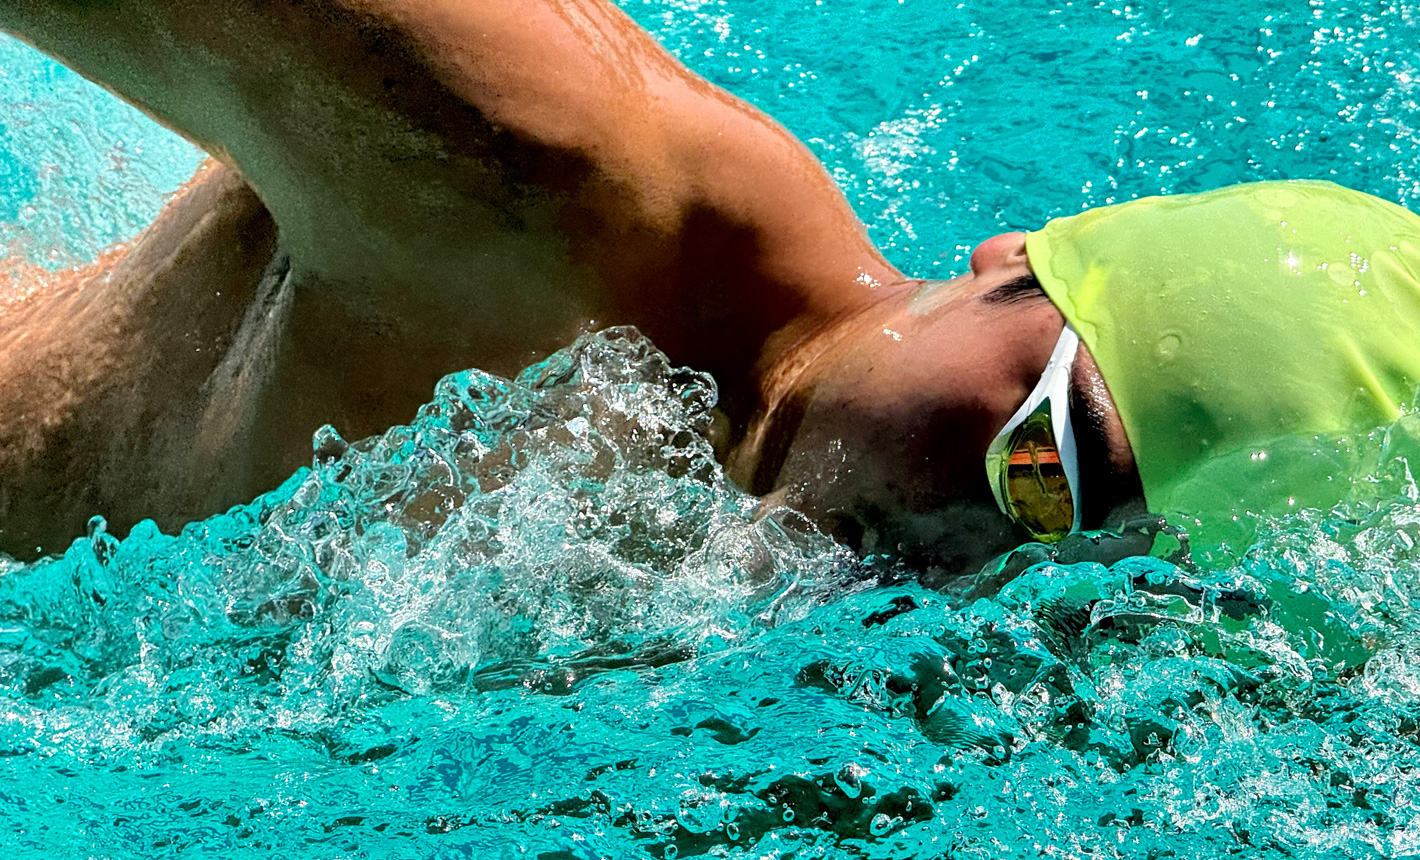 ภาพซูมที่มีรายละเอียดสูงของนักว่ายน้ำคนหนึ่งในสระโดยมีน้ำกระเซ็นอยู่รอบๆ ตัว